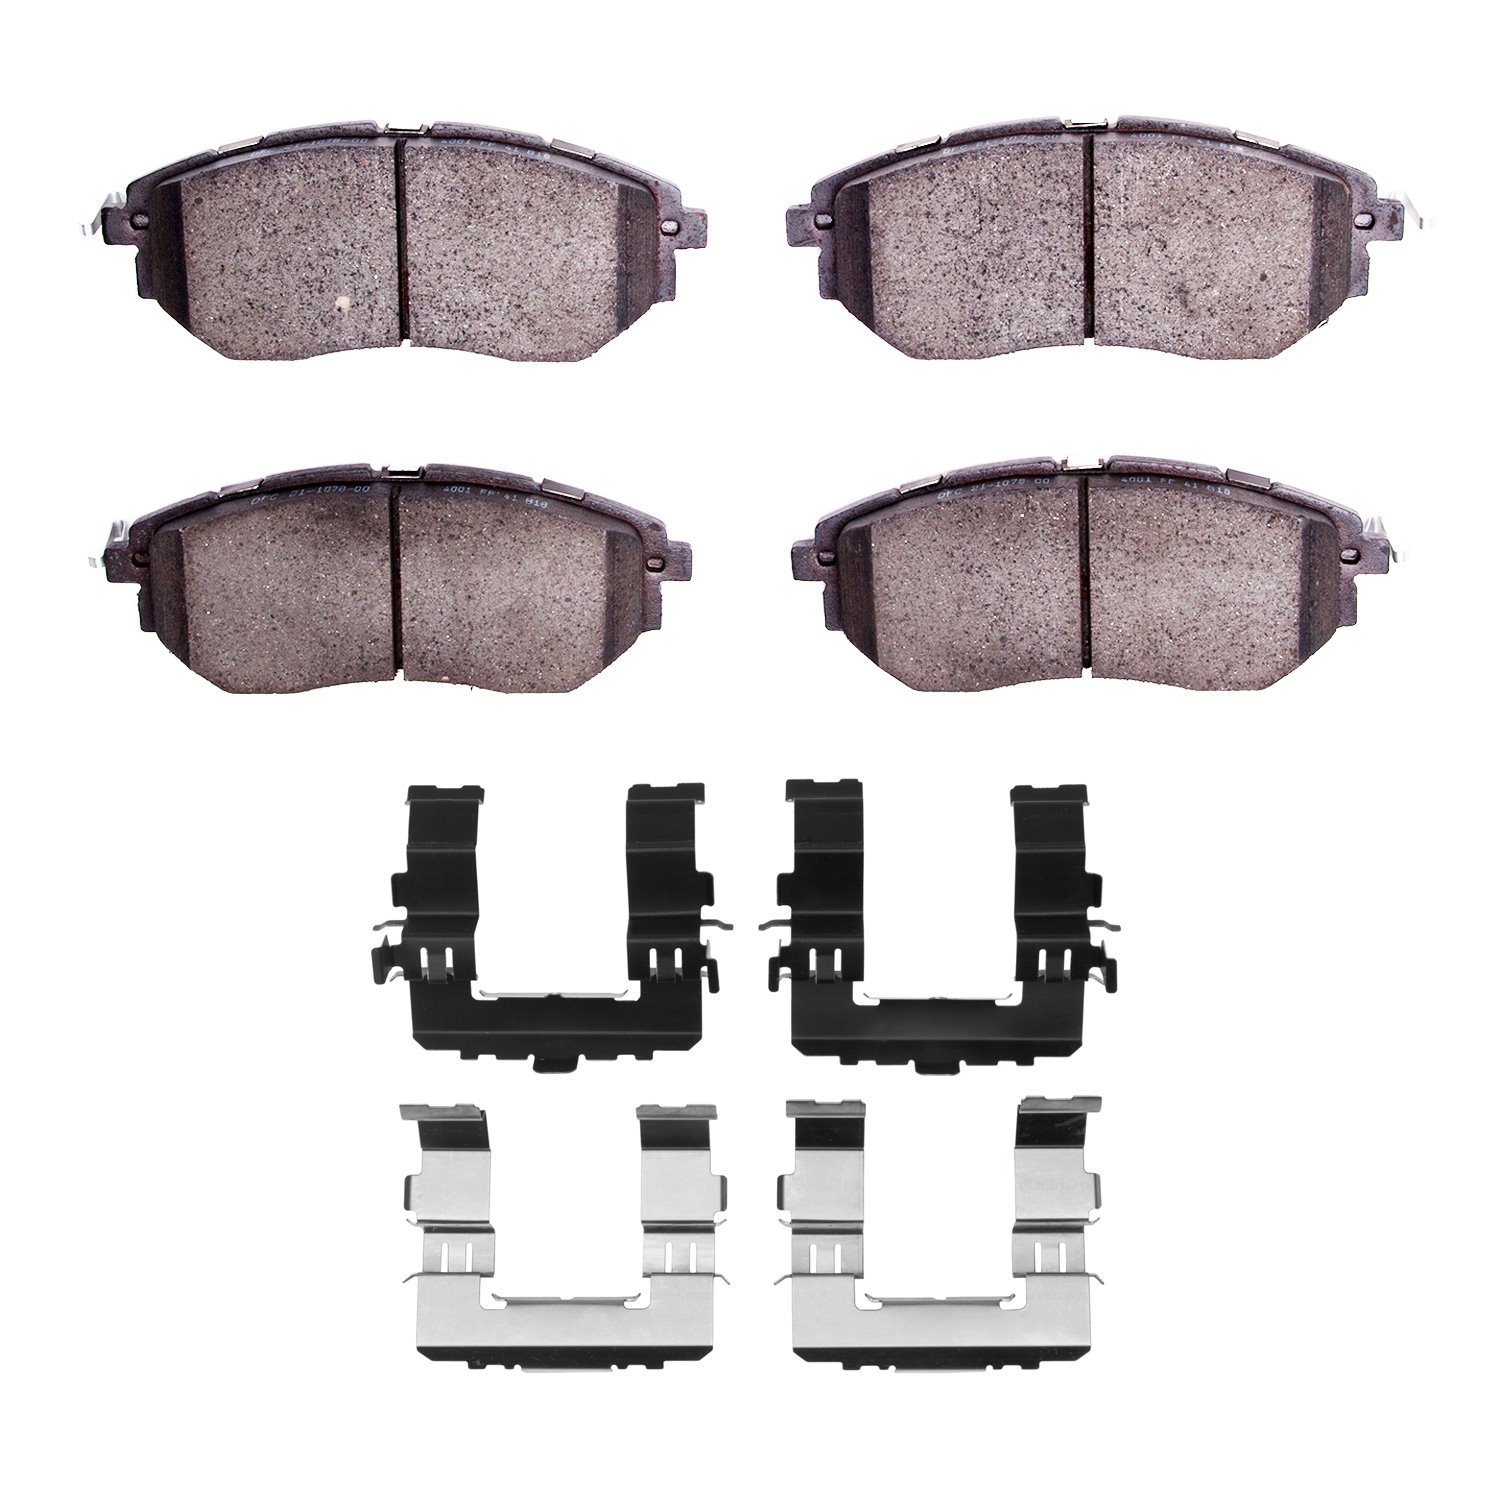 1600-1078-02 5000 Euro Ceramic Brake Pads & Hardware Kit, 2015-2015 Subaru, Position: Front